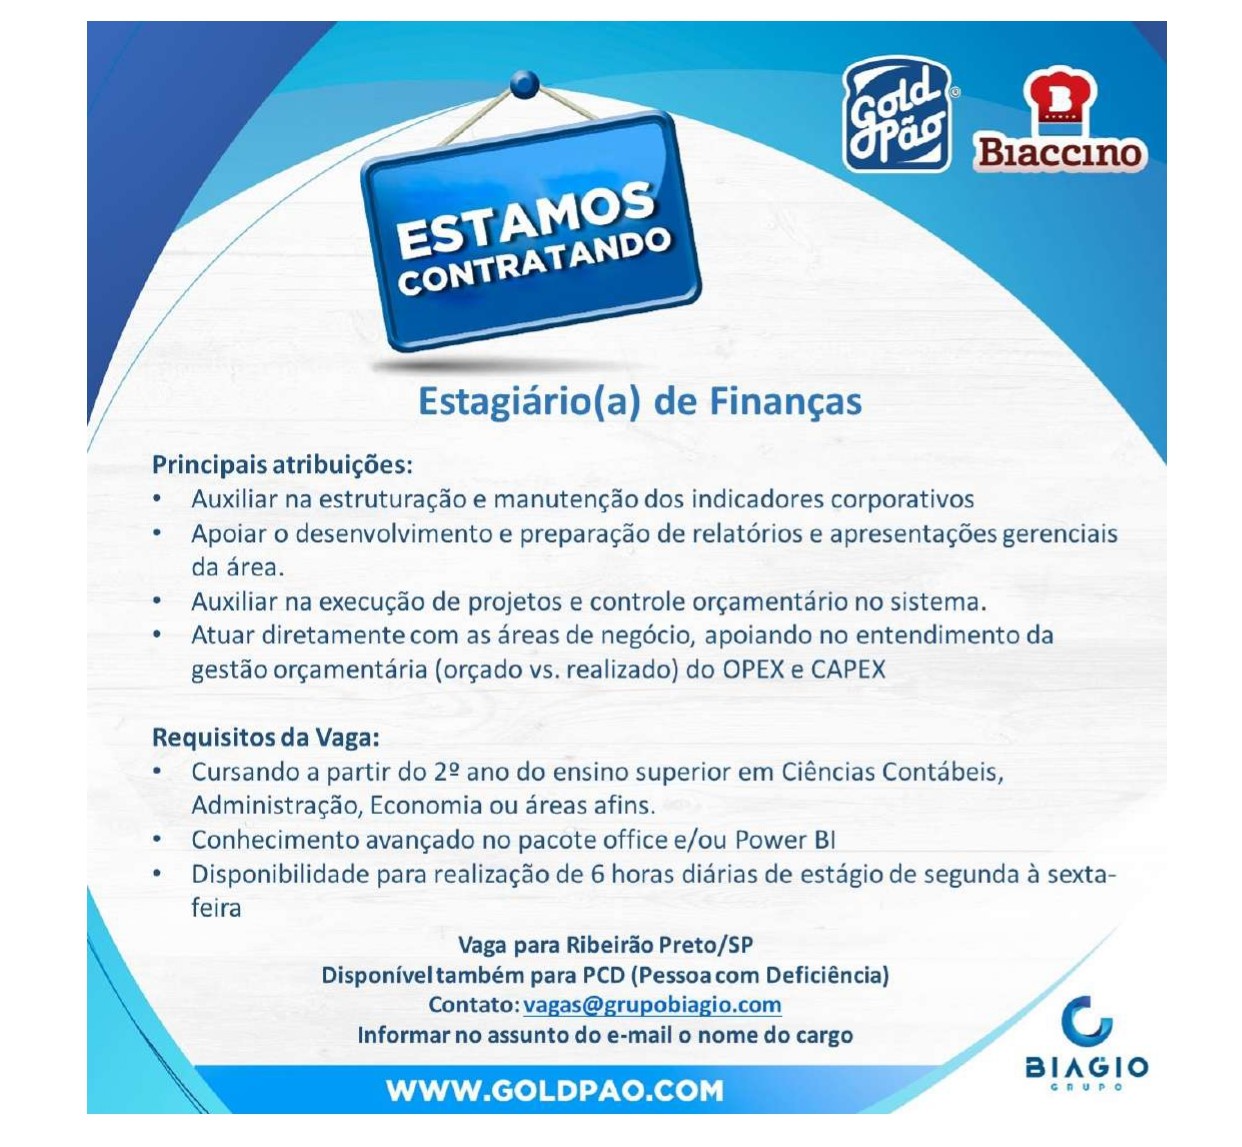 Biagio_Estágiario_de_Finanças_compressed_page-0001.jpg